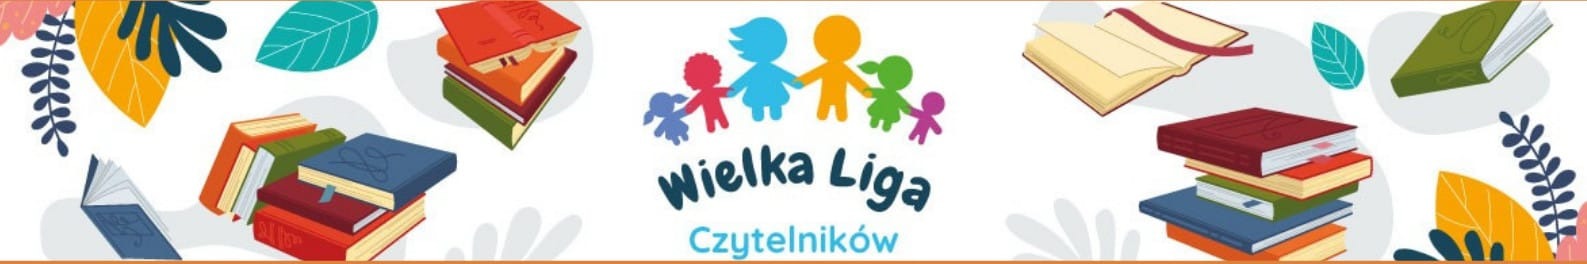 Ogólnopolskie Mistrzostwa Powiatowe Wielkiej Ligi Czytelników - Obrazek 1